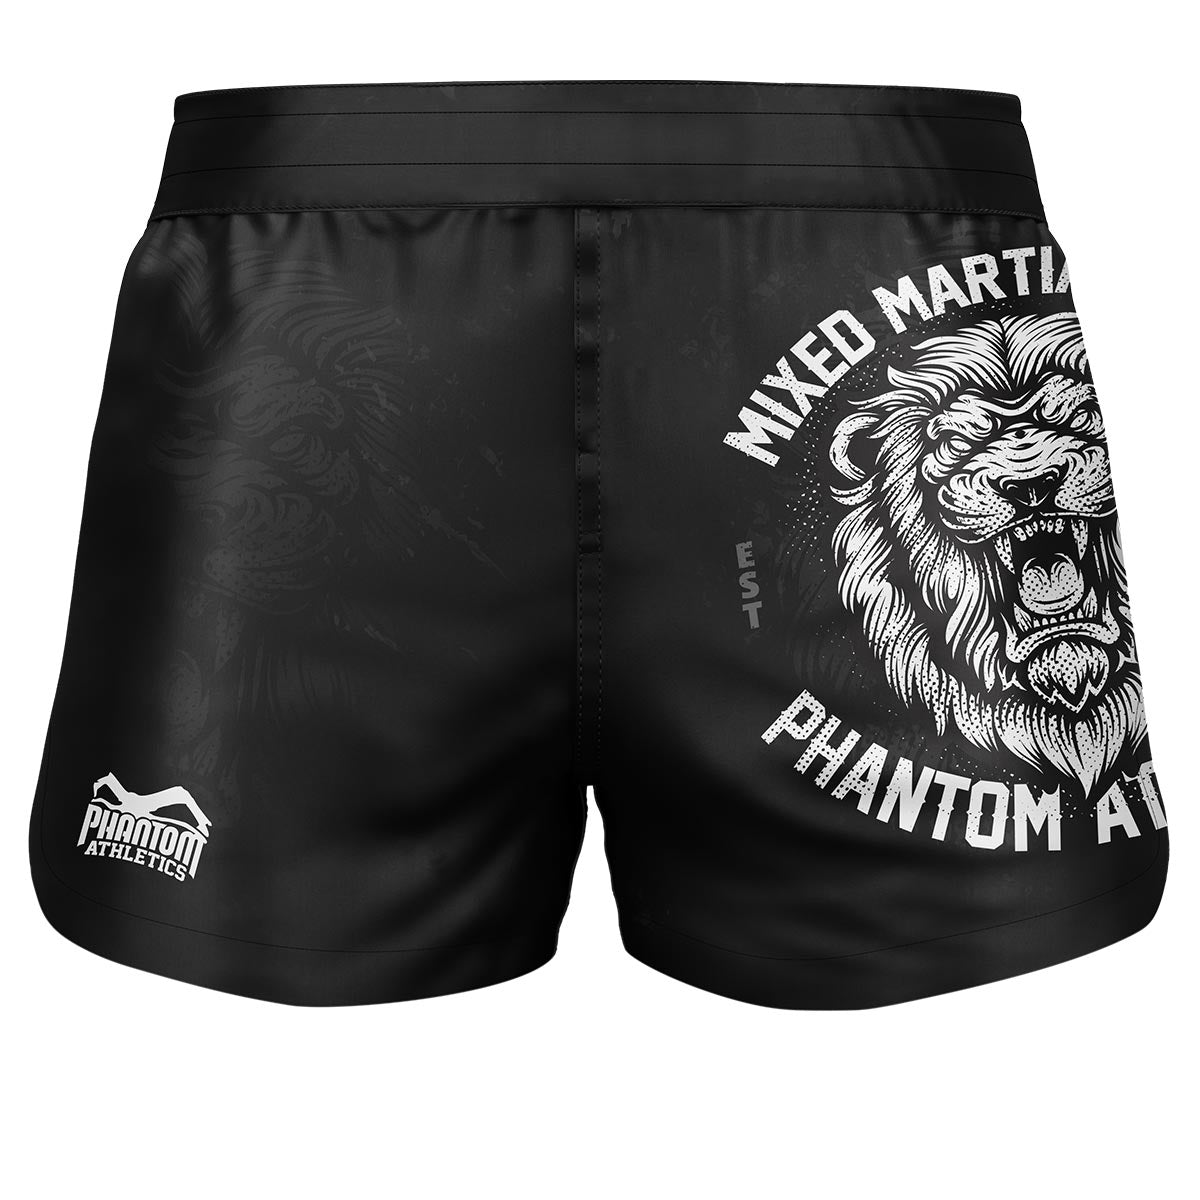 Pantaloncini da combattimento Phantom Fusion 2in1. Pantaloncini definitivi per le tue arti marziali. Ideale per MMA, Muay Thai, BJJ, wrestling e altro ancora. In nero con disegno di leone.